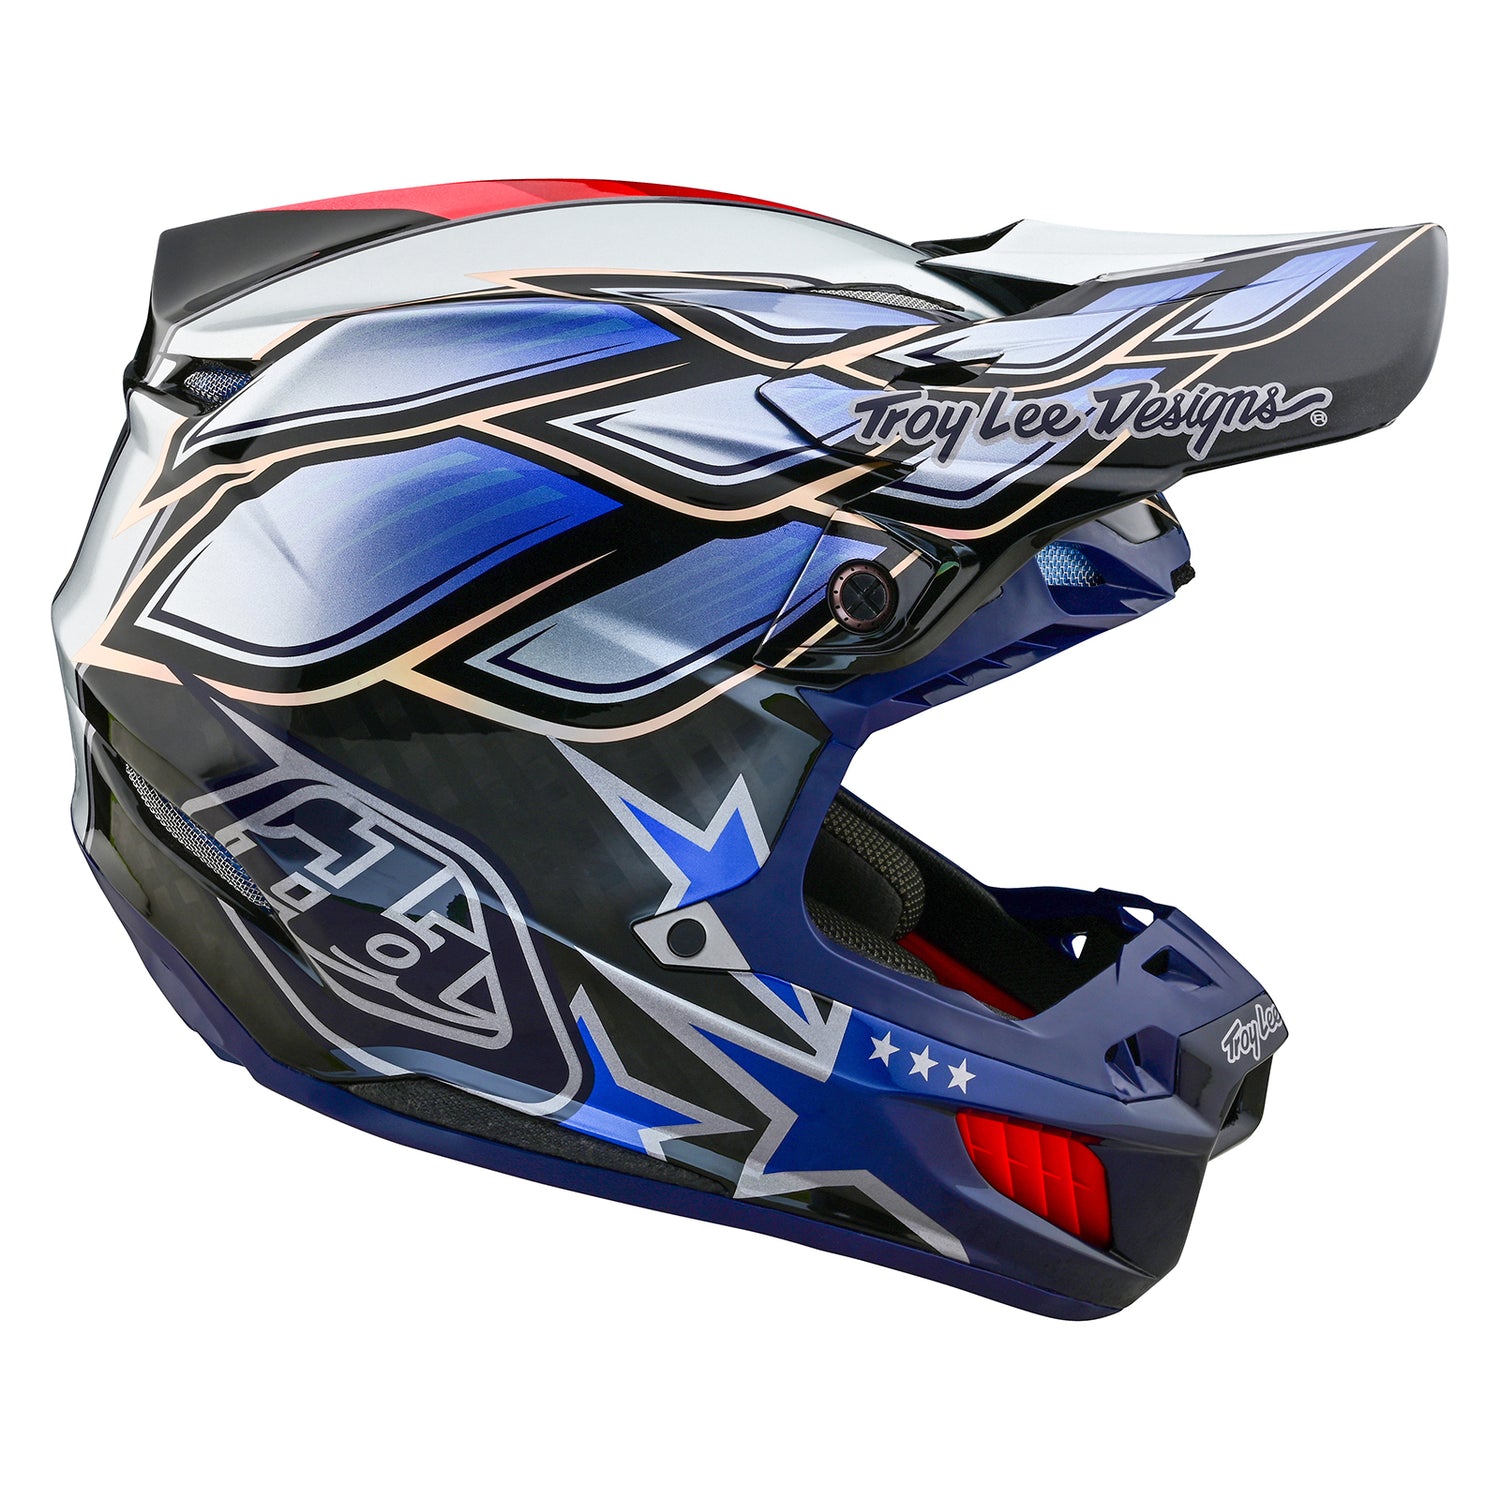 SE5 Composite Helmet W/MIPS Wings Black